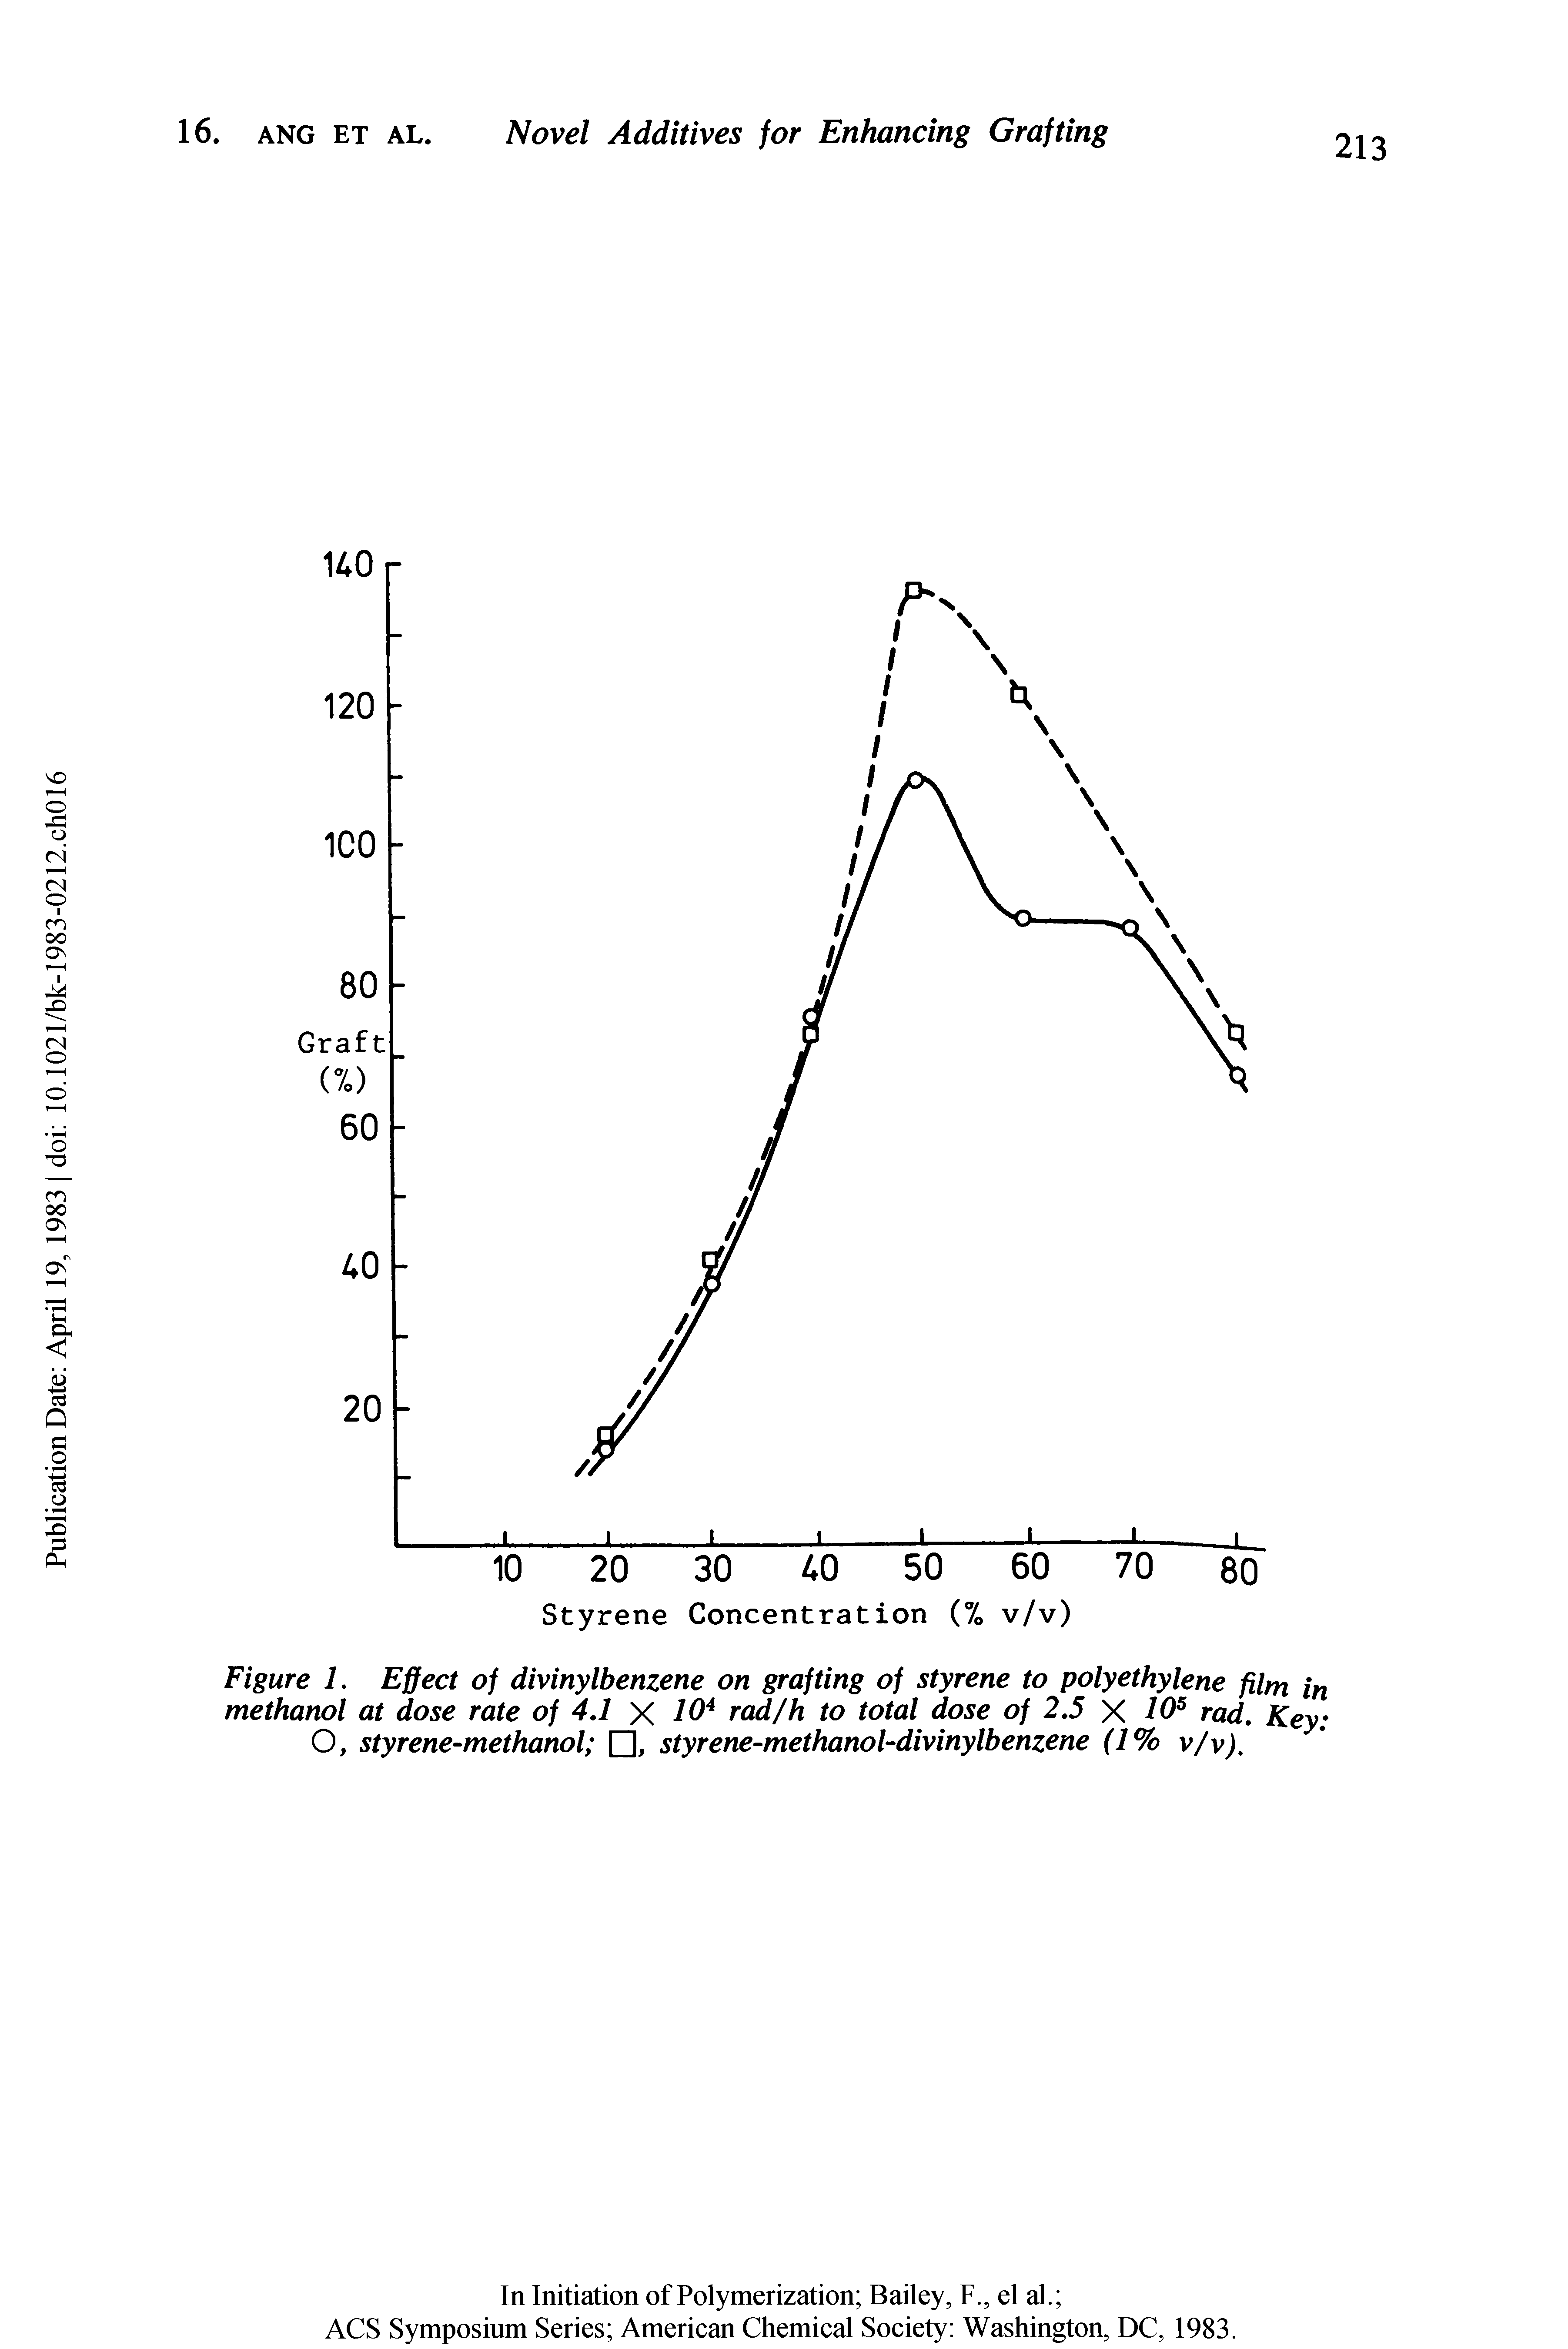 Figure 1. Effect of divinylbenzene on grafting of styrene to polyethylene film in methanol at dose rate of 4,1 X rad/h to total dose of 2,5 X 10 rad. Key O, styrene-methanol , styrene-methanol-divinylbenzene (1% v/v).